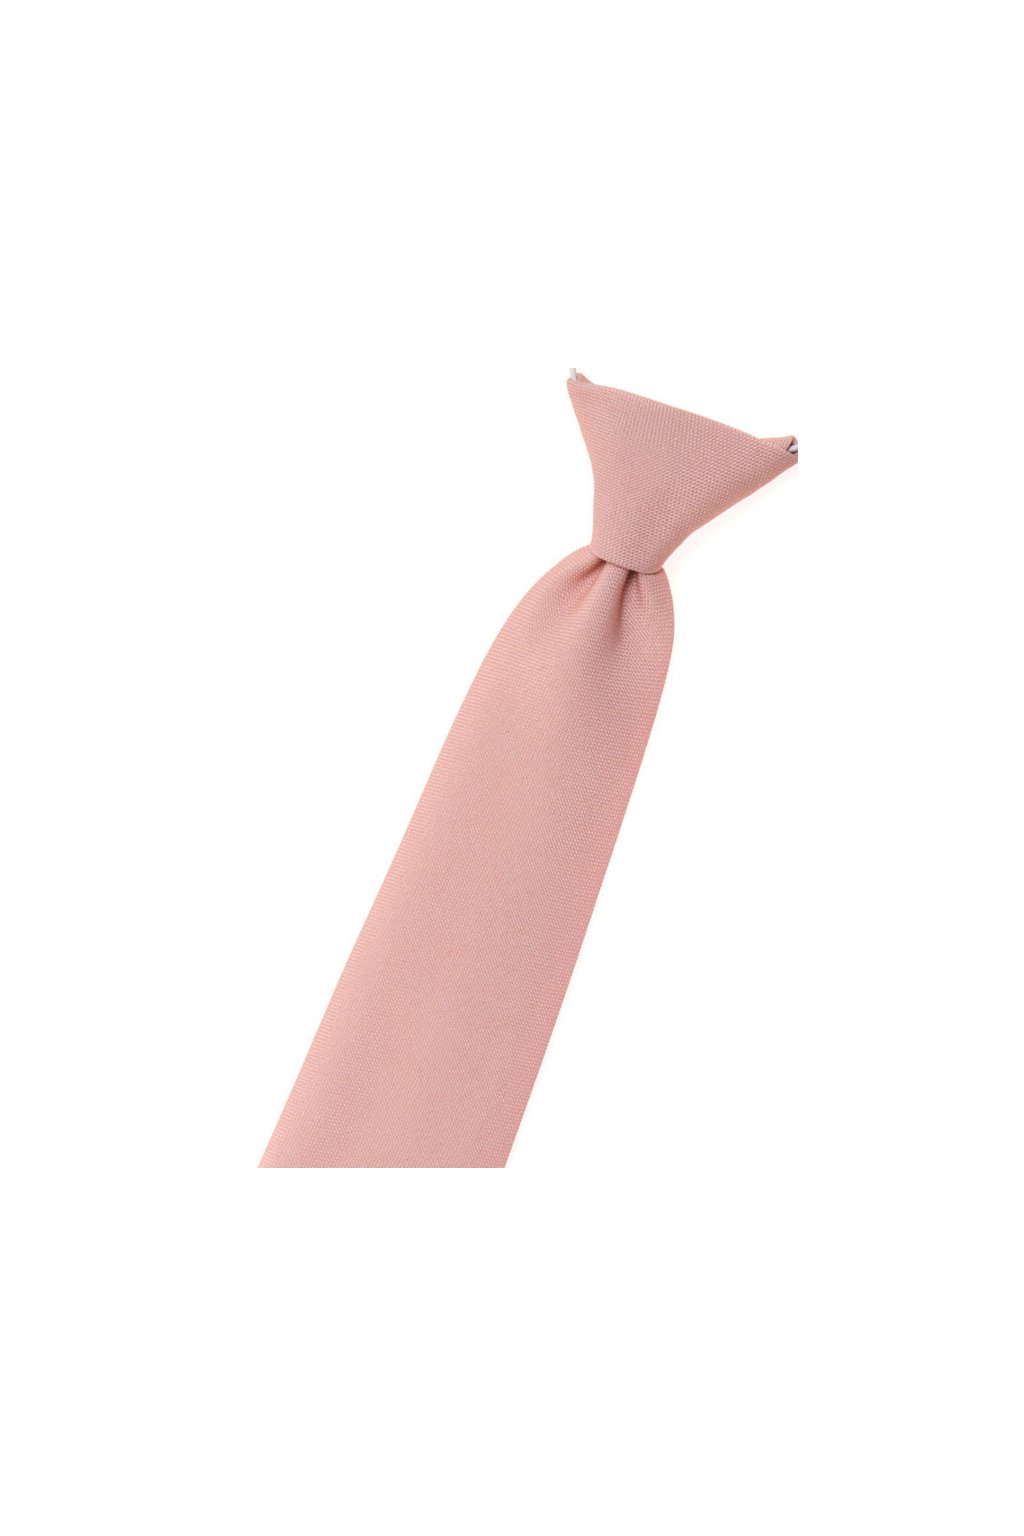 Chlapecká kravata Avantgard -pudrová